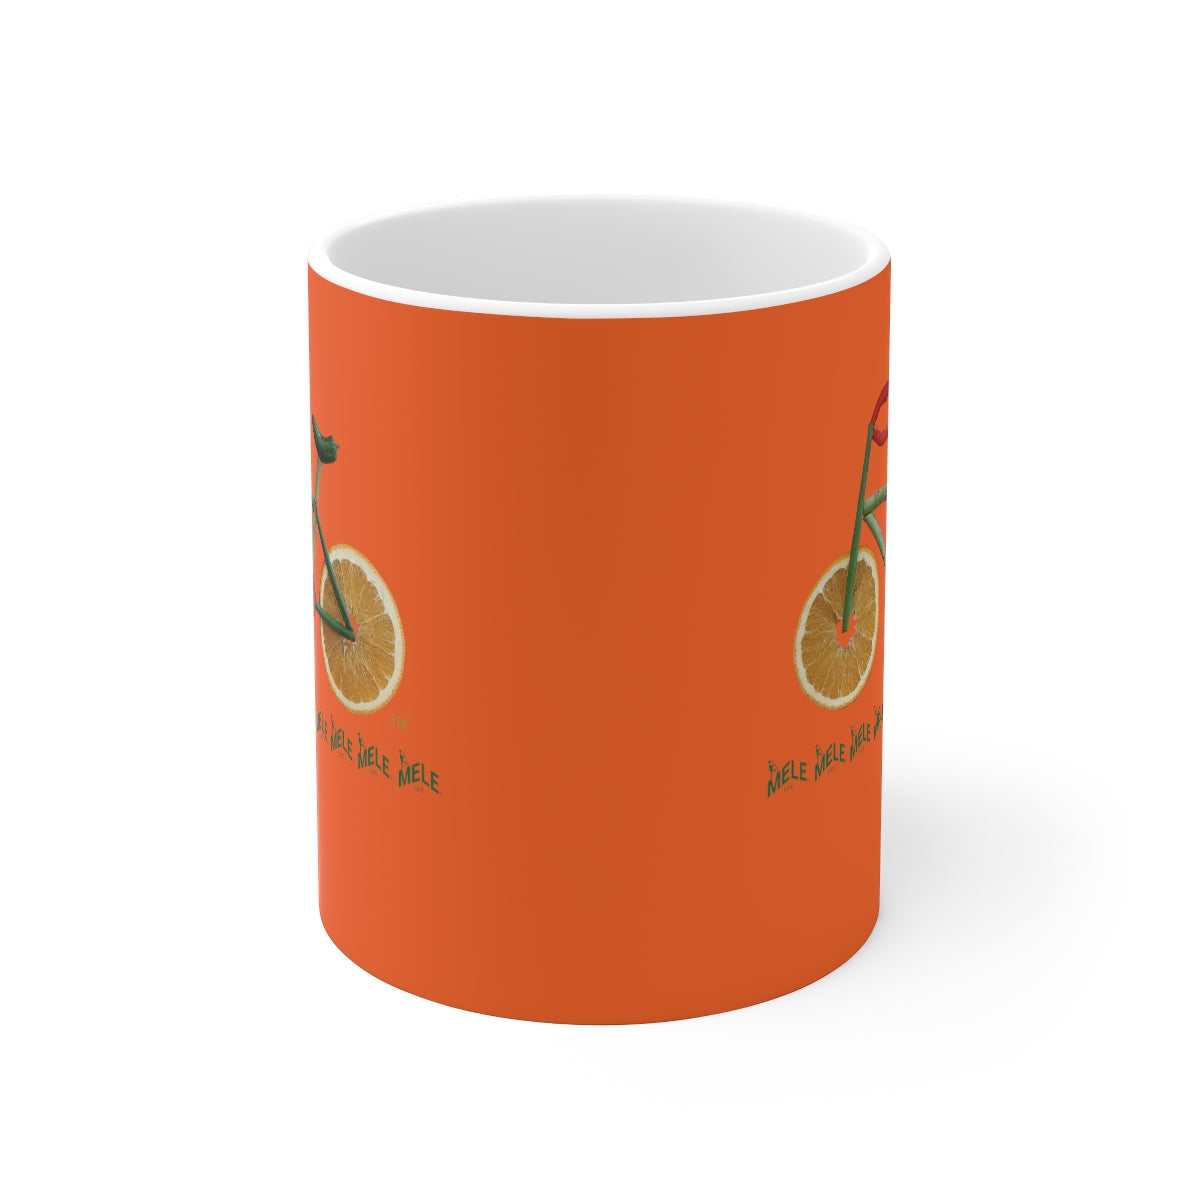 Coffee Mug - Veggie Bike  (orange)